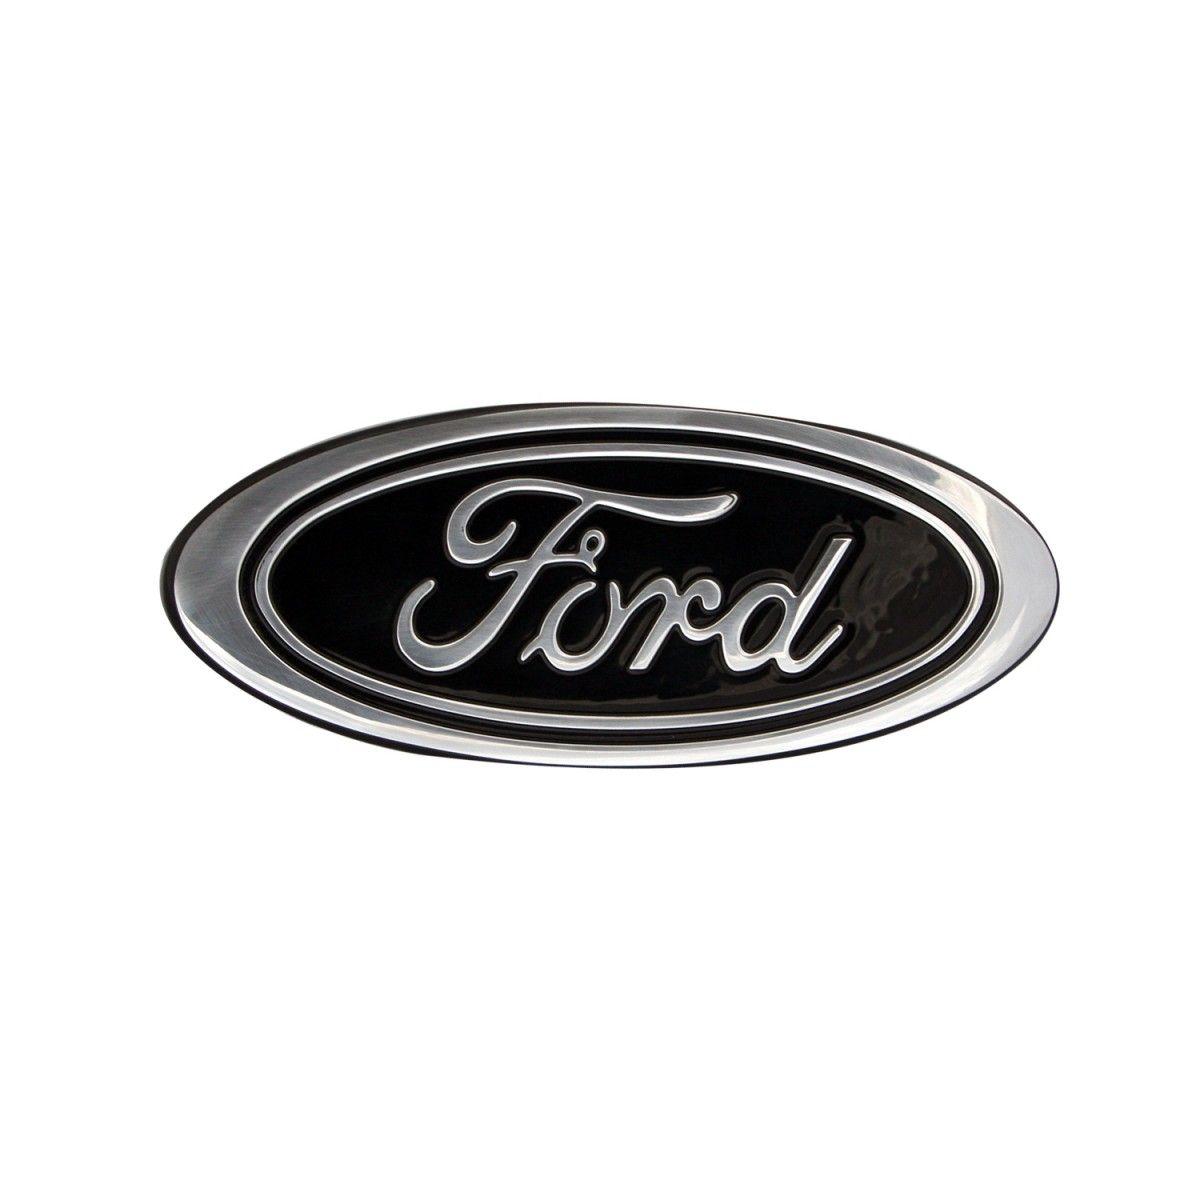 2015 Ford Logo - 2015 Ford F-150 Billet Grille & Tailgate Emblem 9.5-Inch black Oval